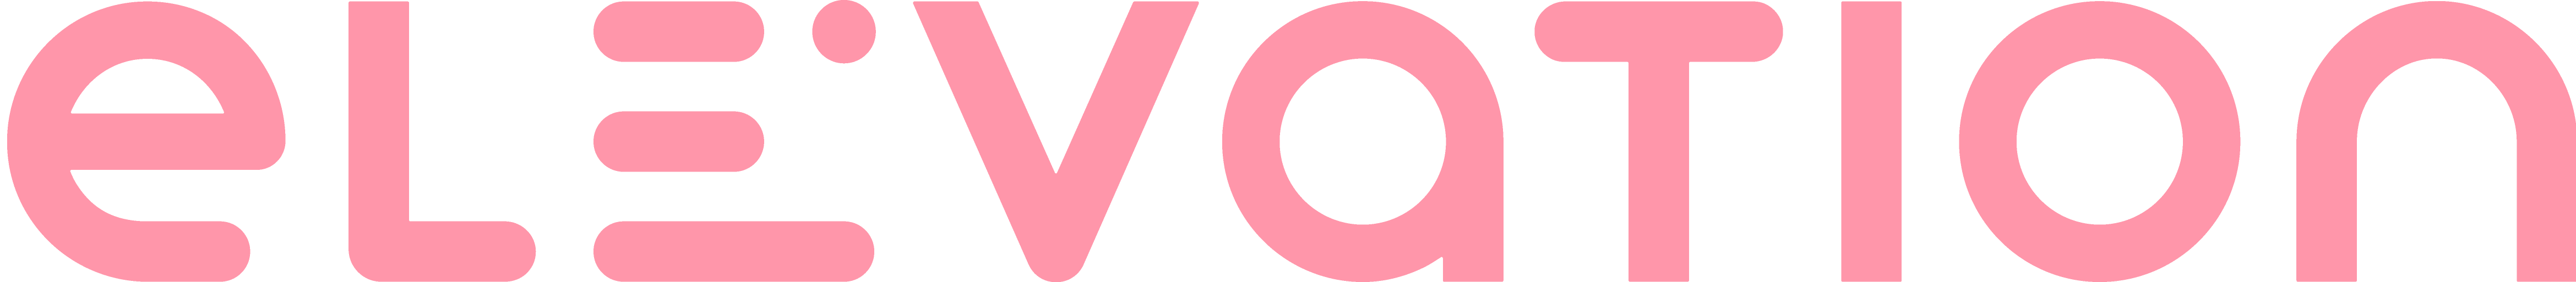 logo pink-10